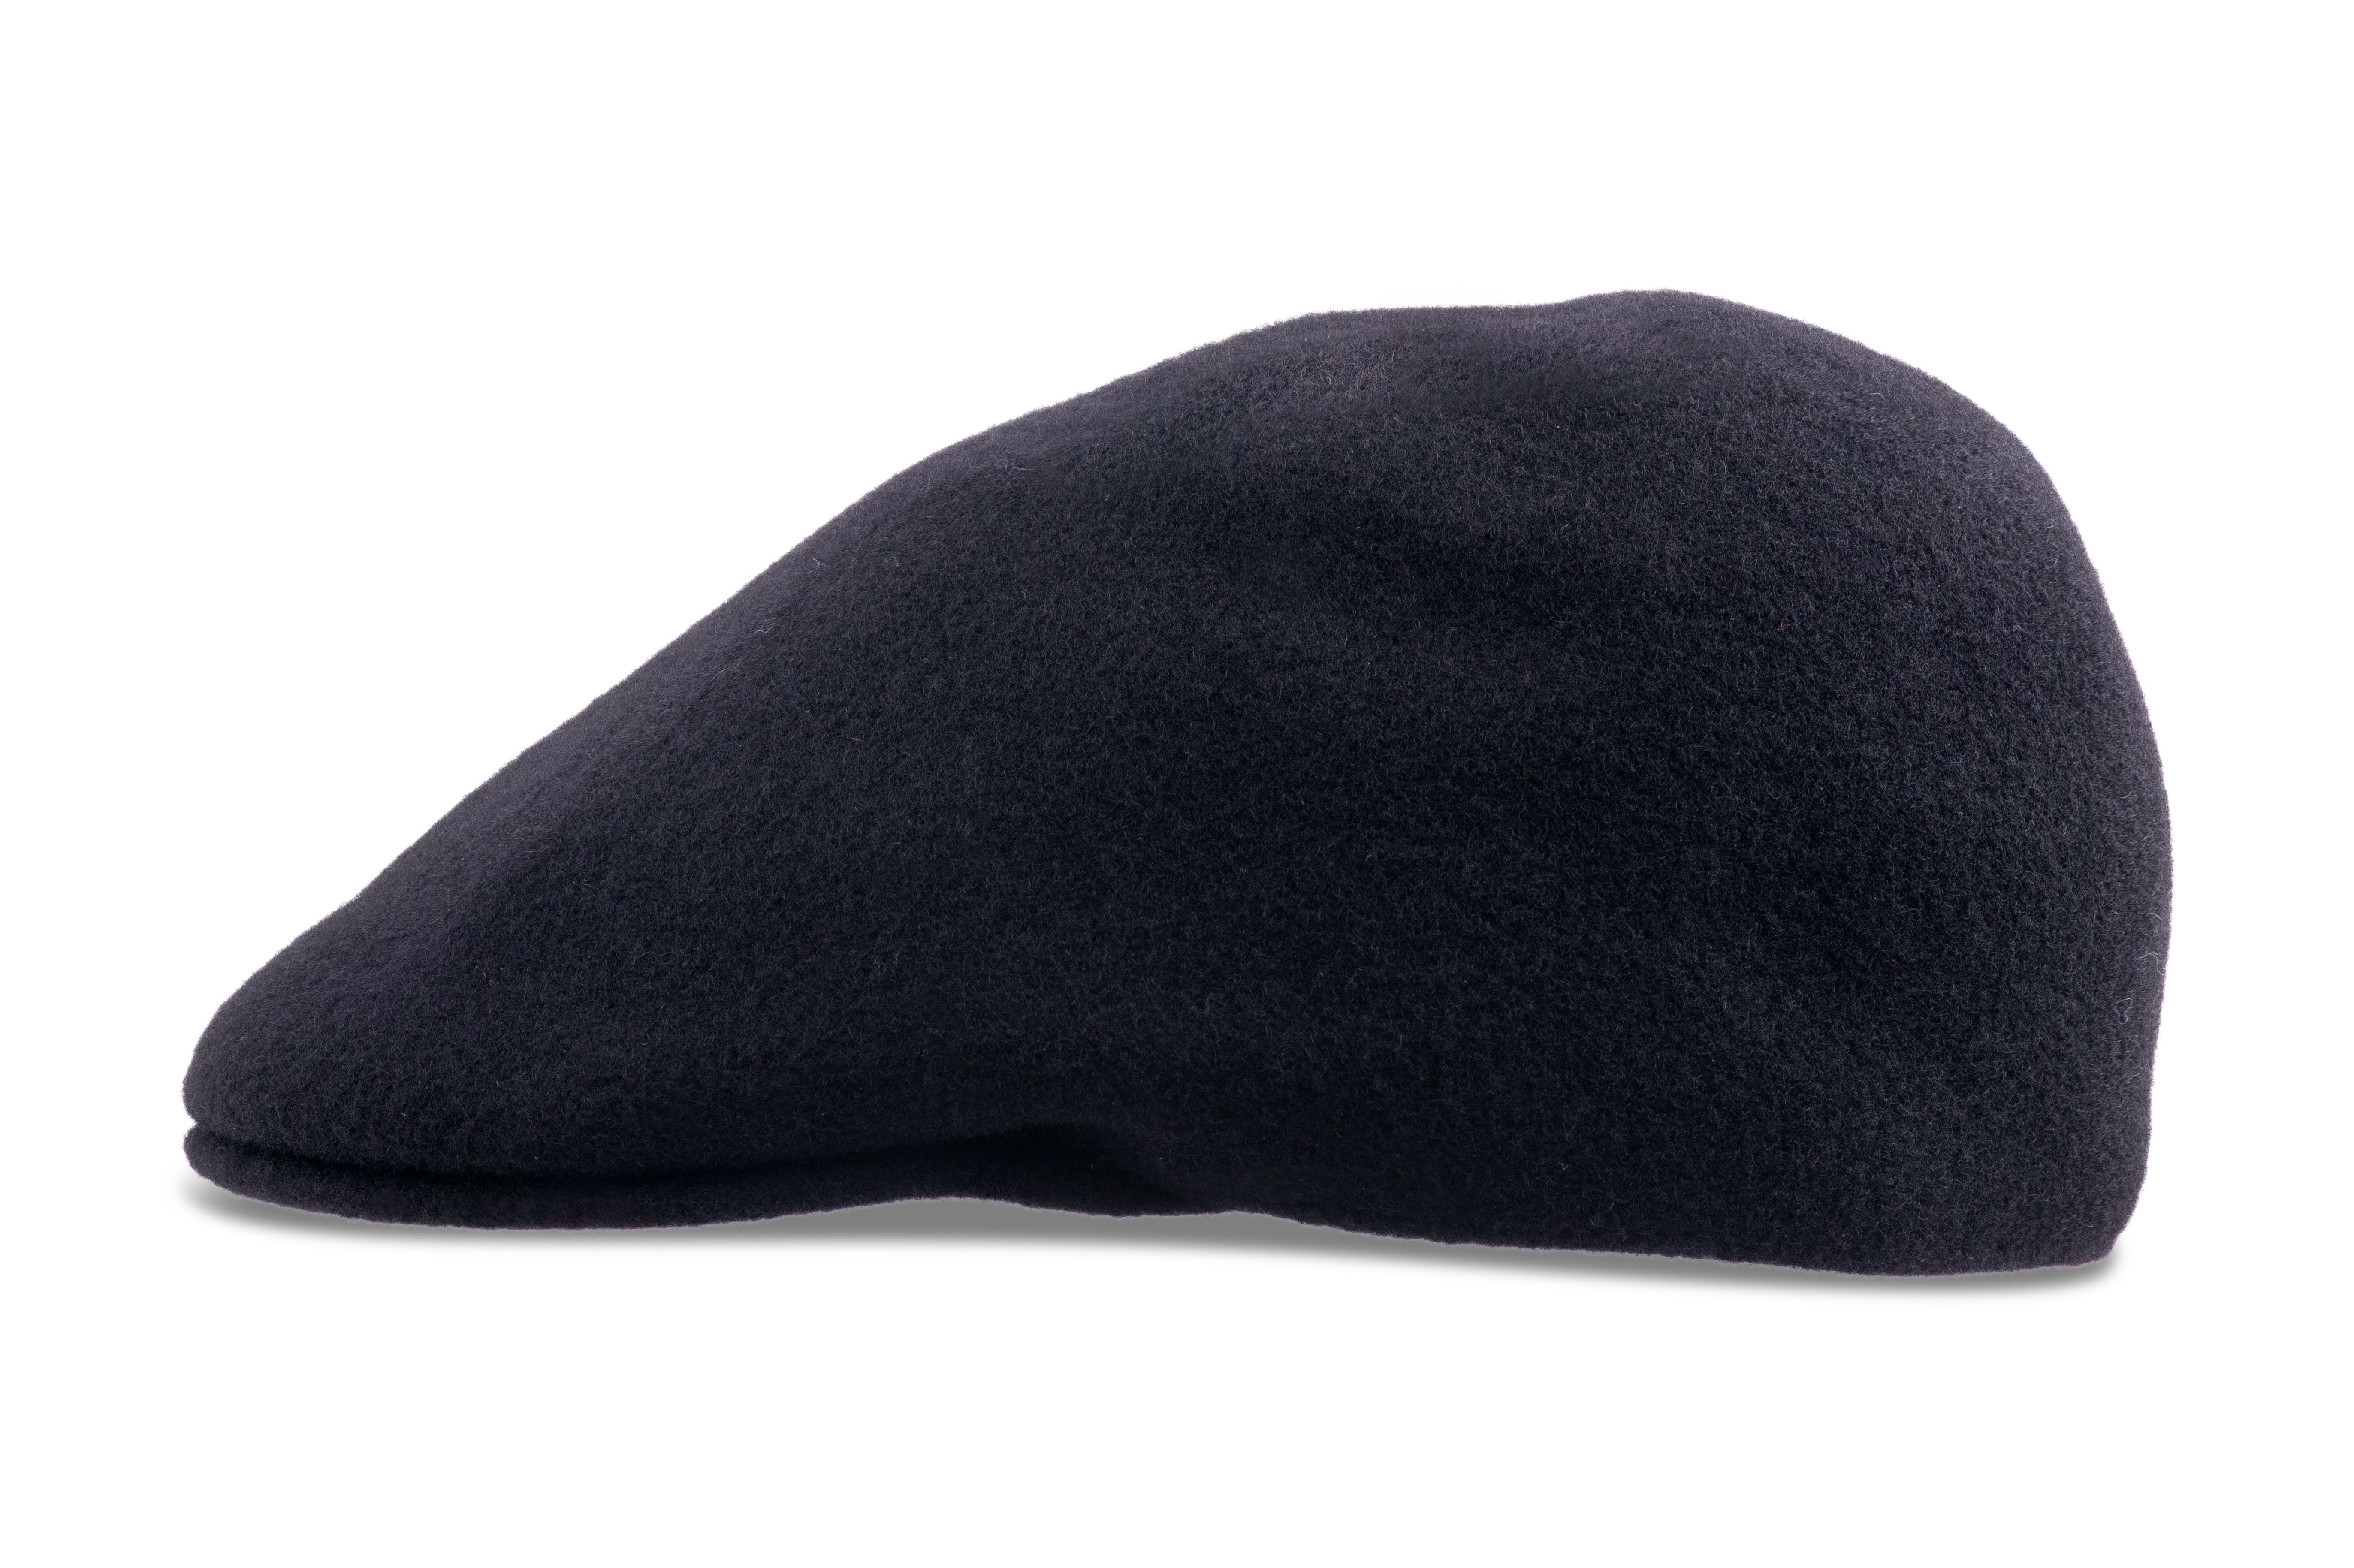 Kangol Seamless Wool 507 Felt Hat for Men and Women - Black - XL